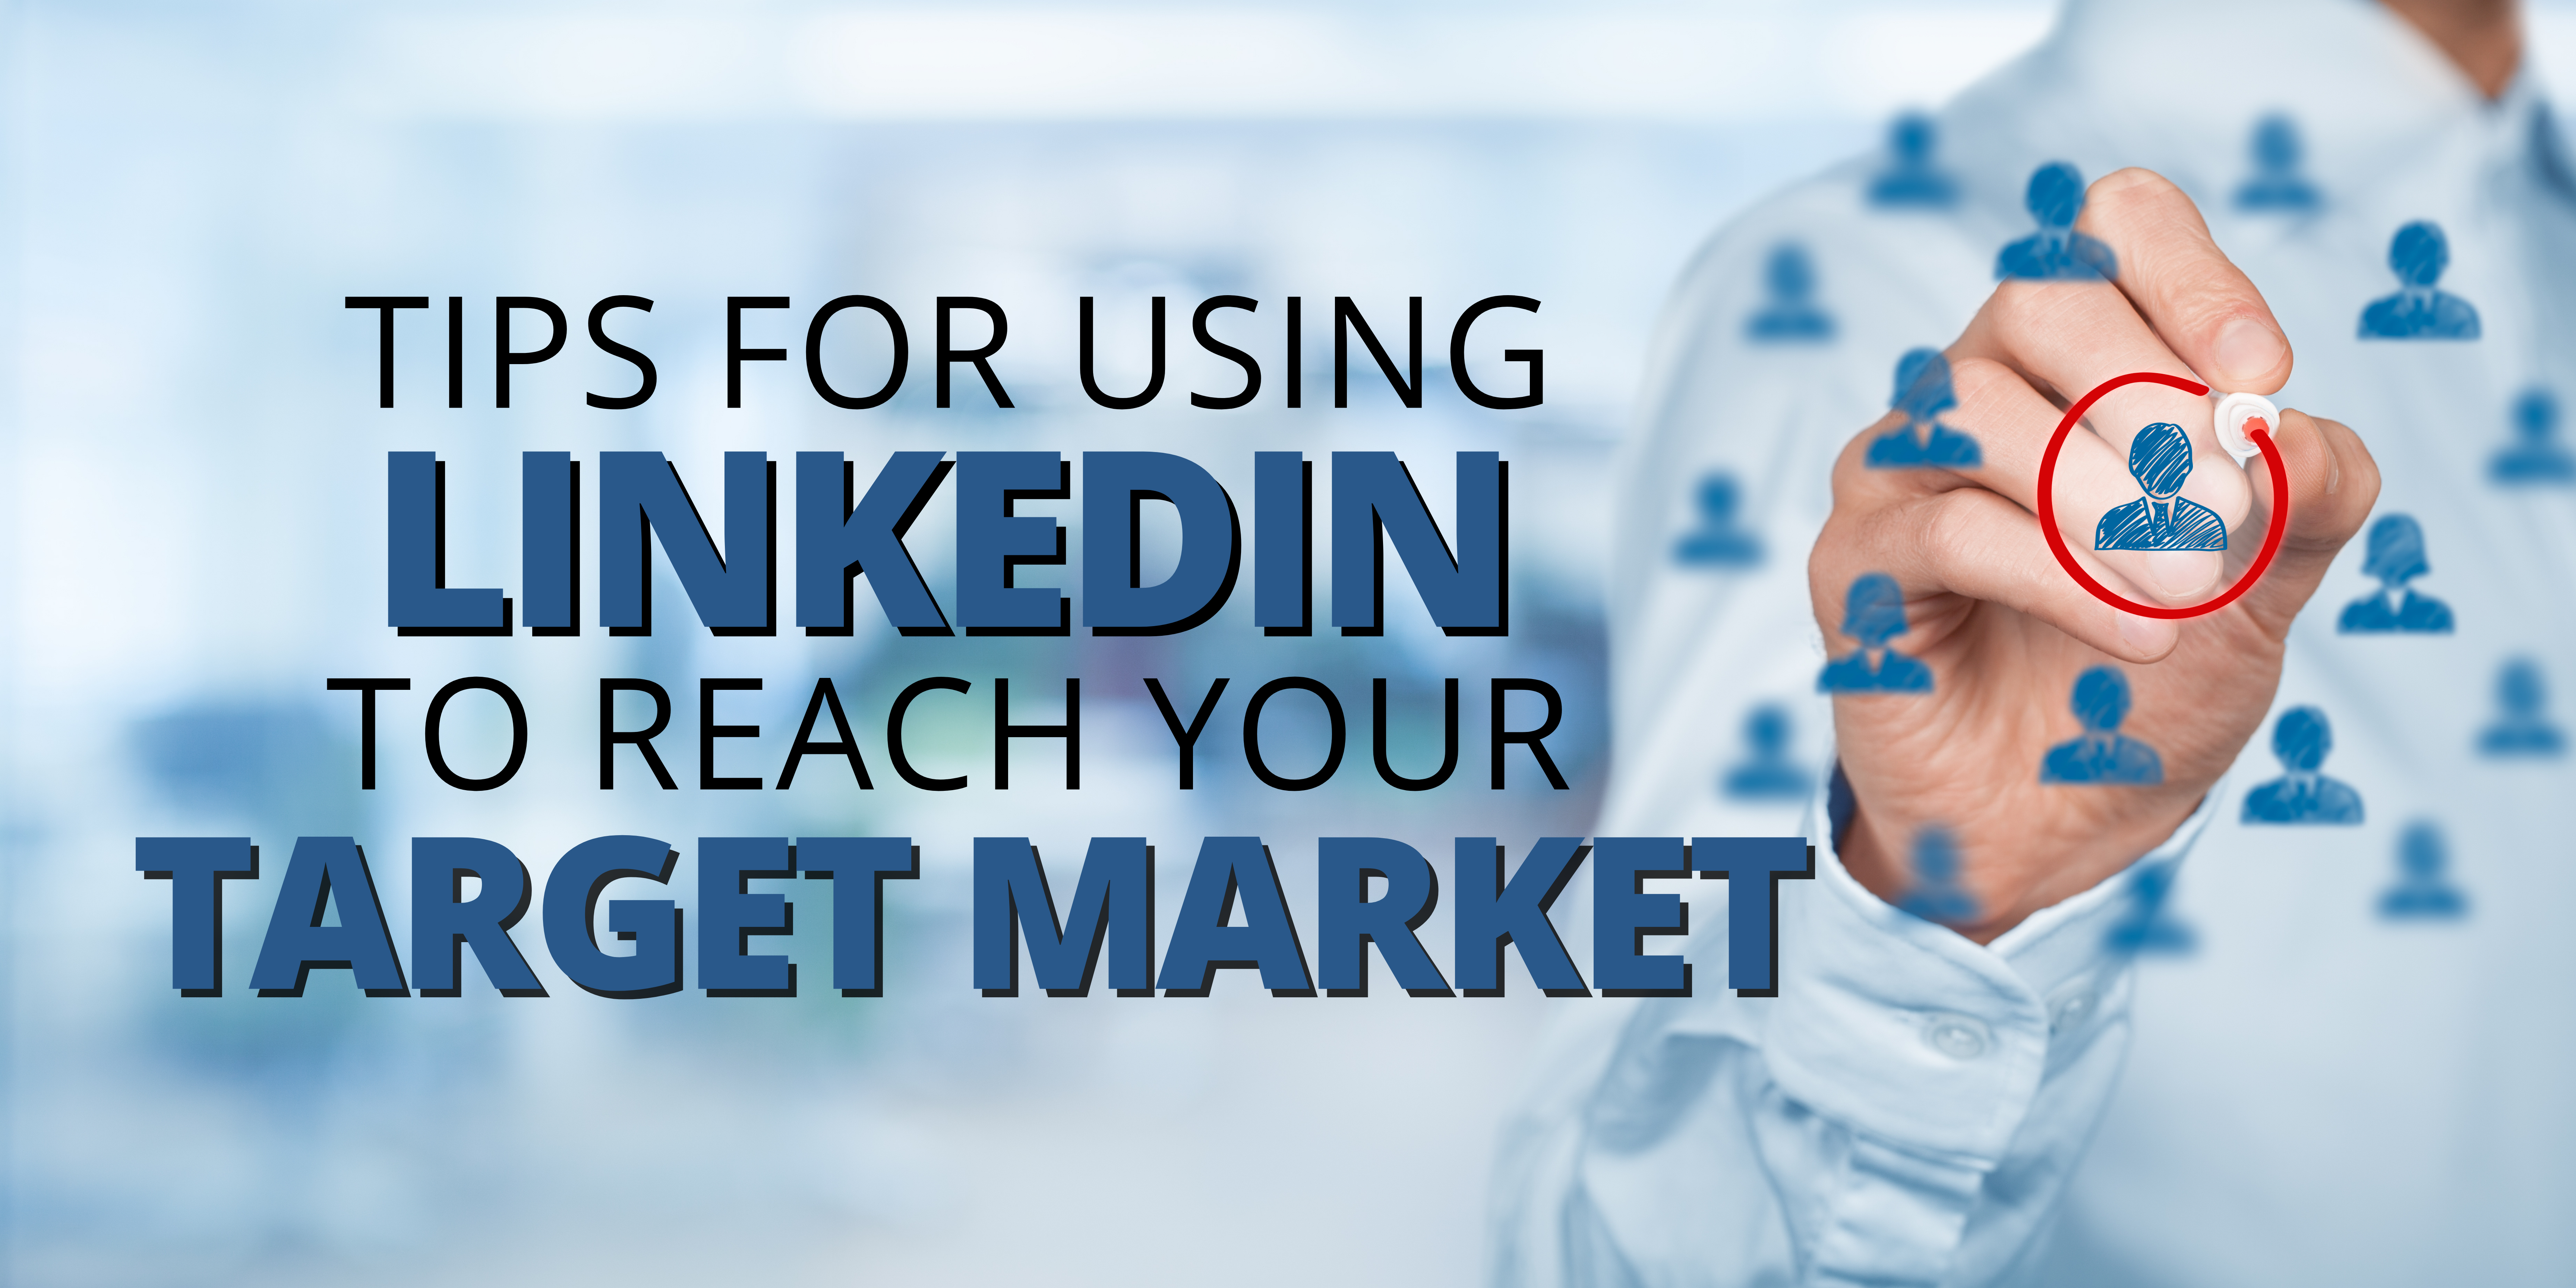 LinkedIn target market tips